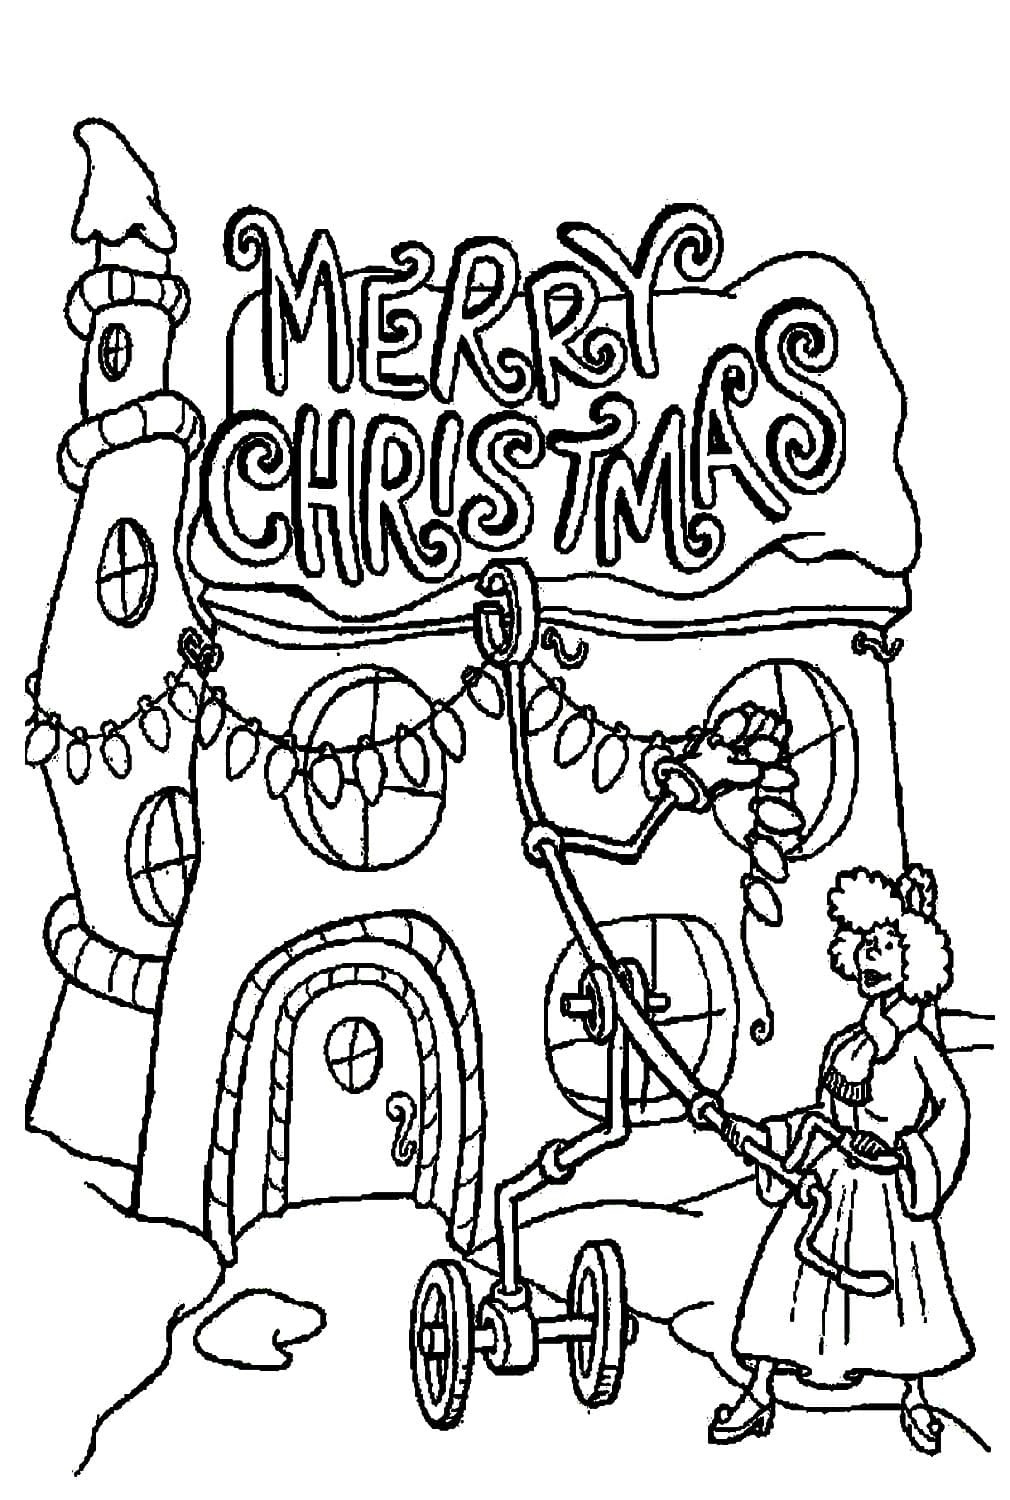 《圣诞怪杰》中的女人为圣诞节装饰房子